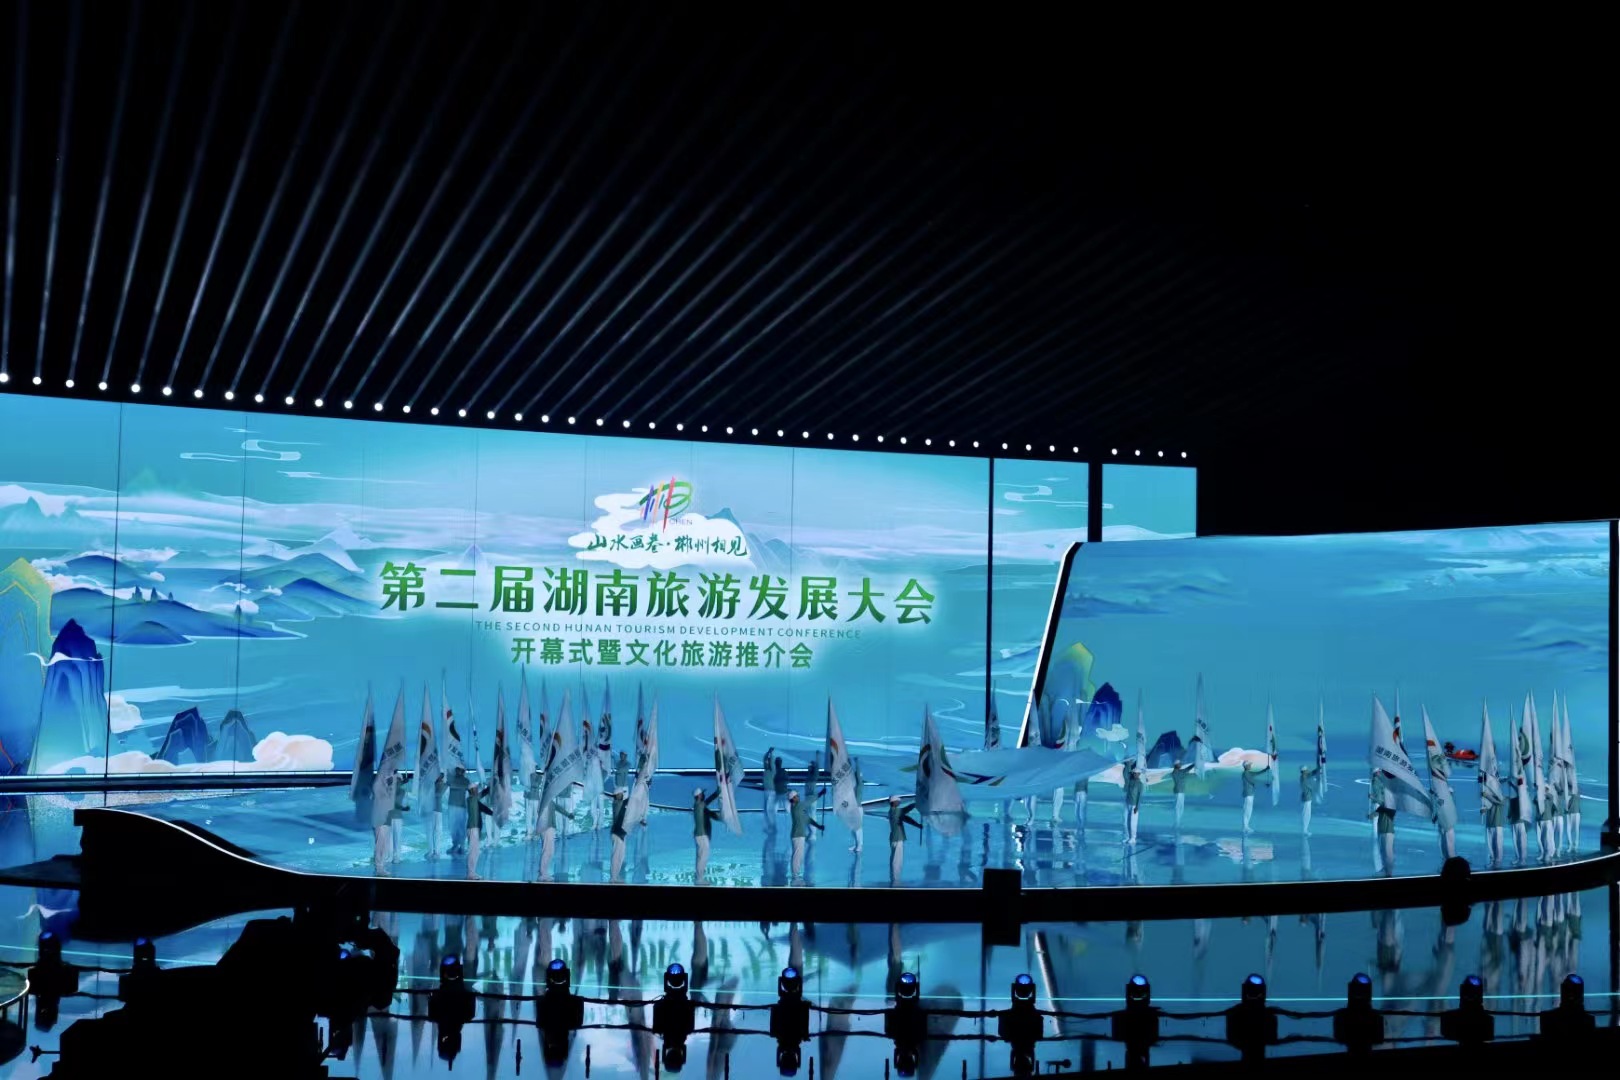 发布《东江湖宣言》 第二届湖南旅发大会在郴州开幕